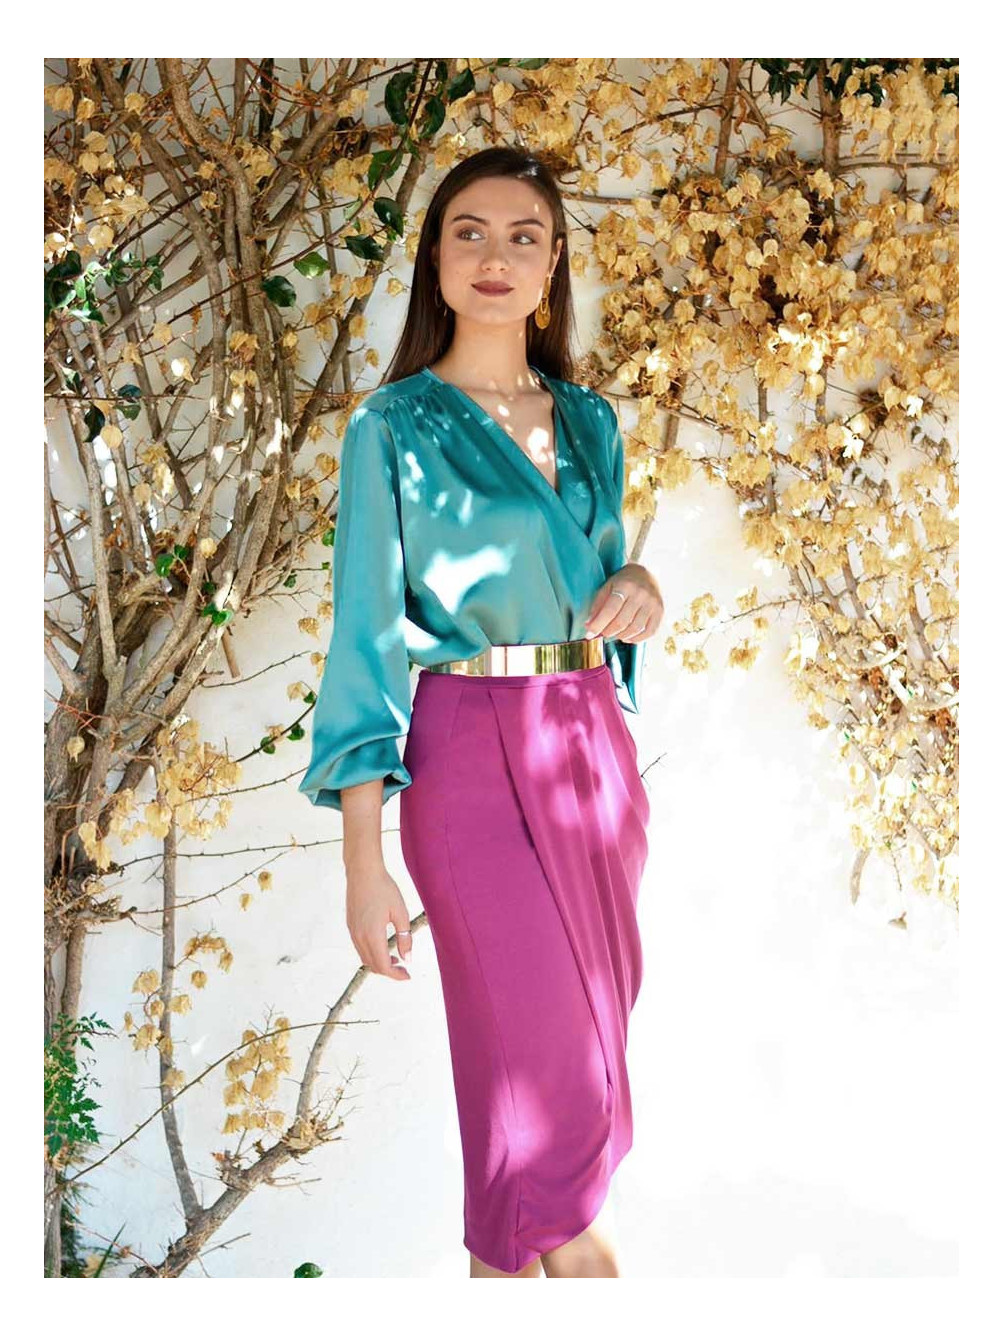 Falda de Fiesta Tulipán, look perfecto, tienda de vestidos baratos, Mariquita Trasquilá